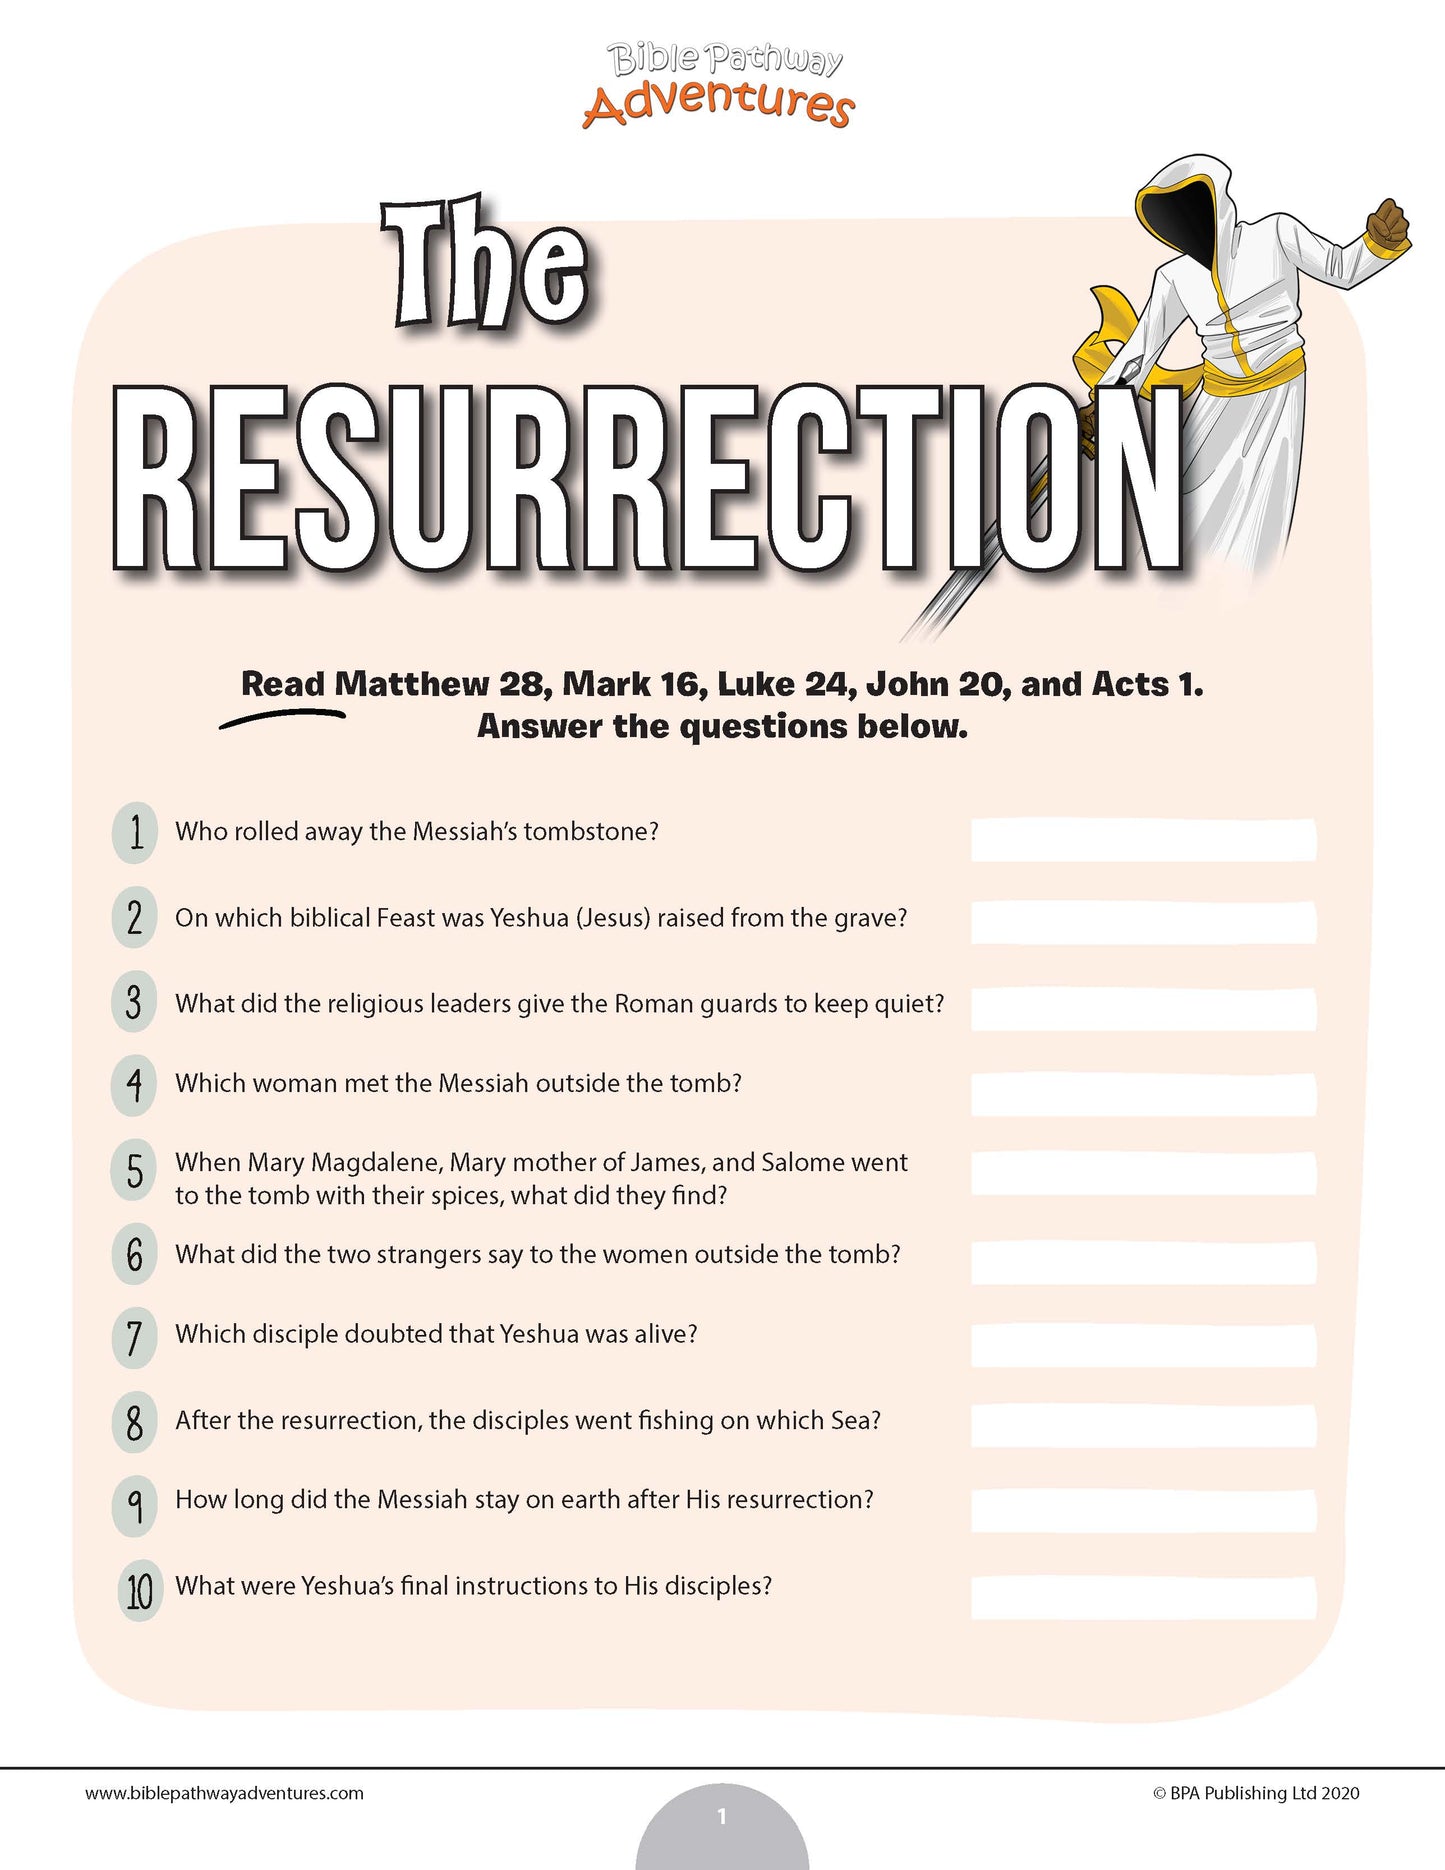 The Resurrection quiz